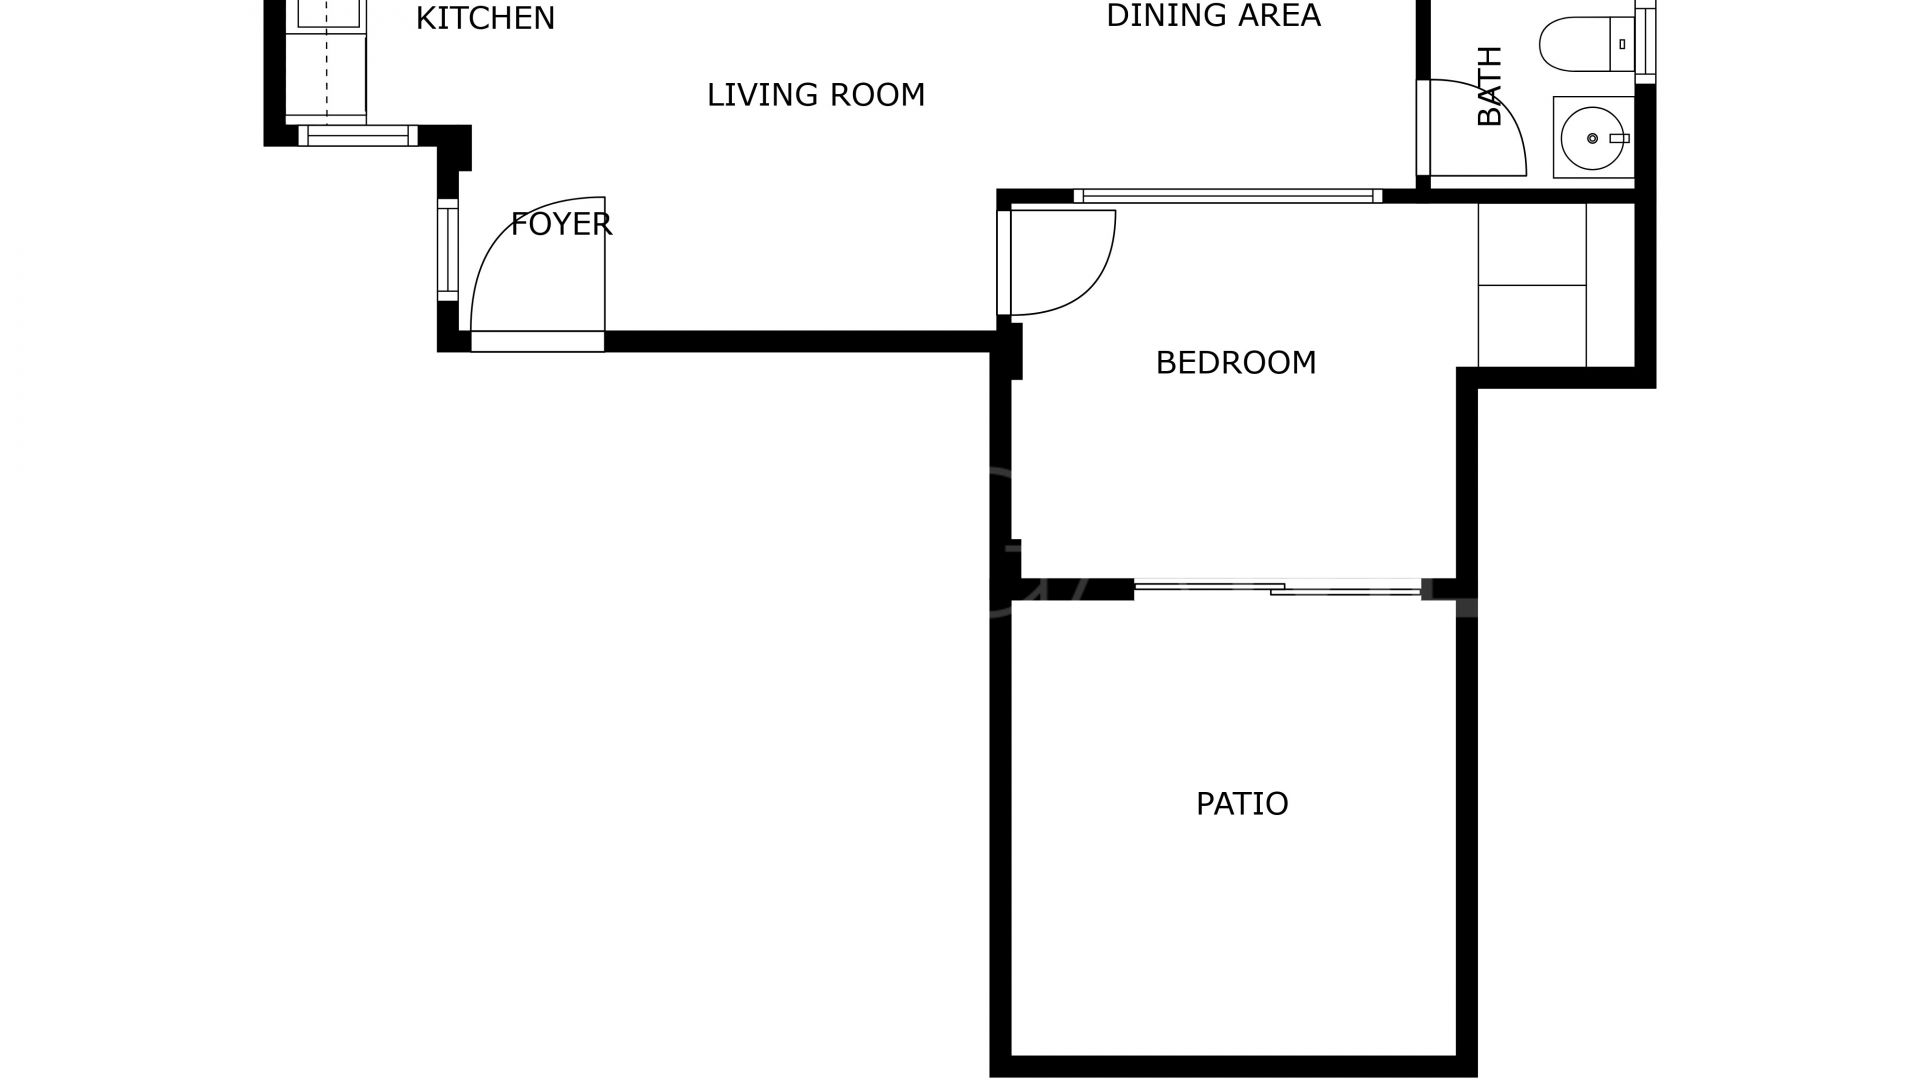 El Molinillo - Capuchinos, apartamento de 1 bedroom for sale